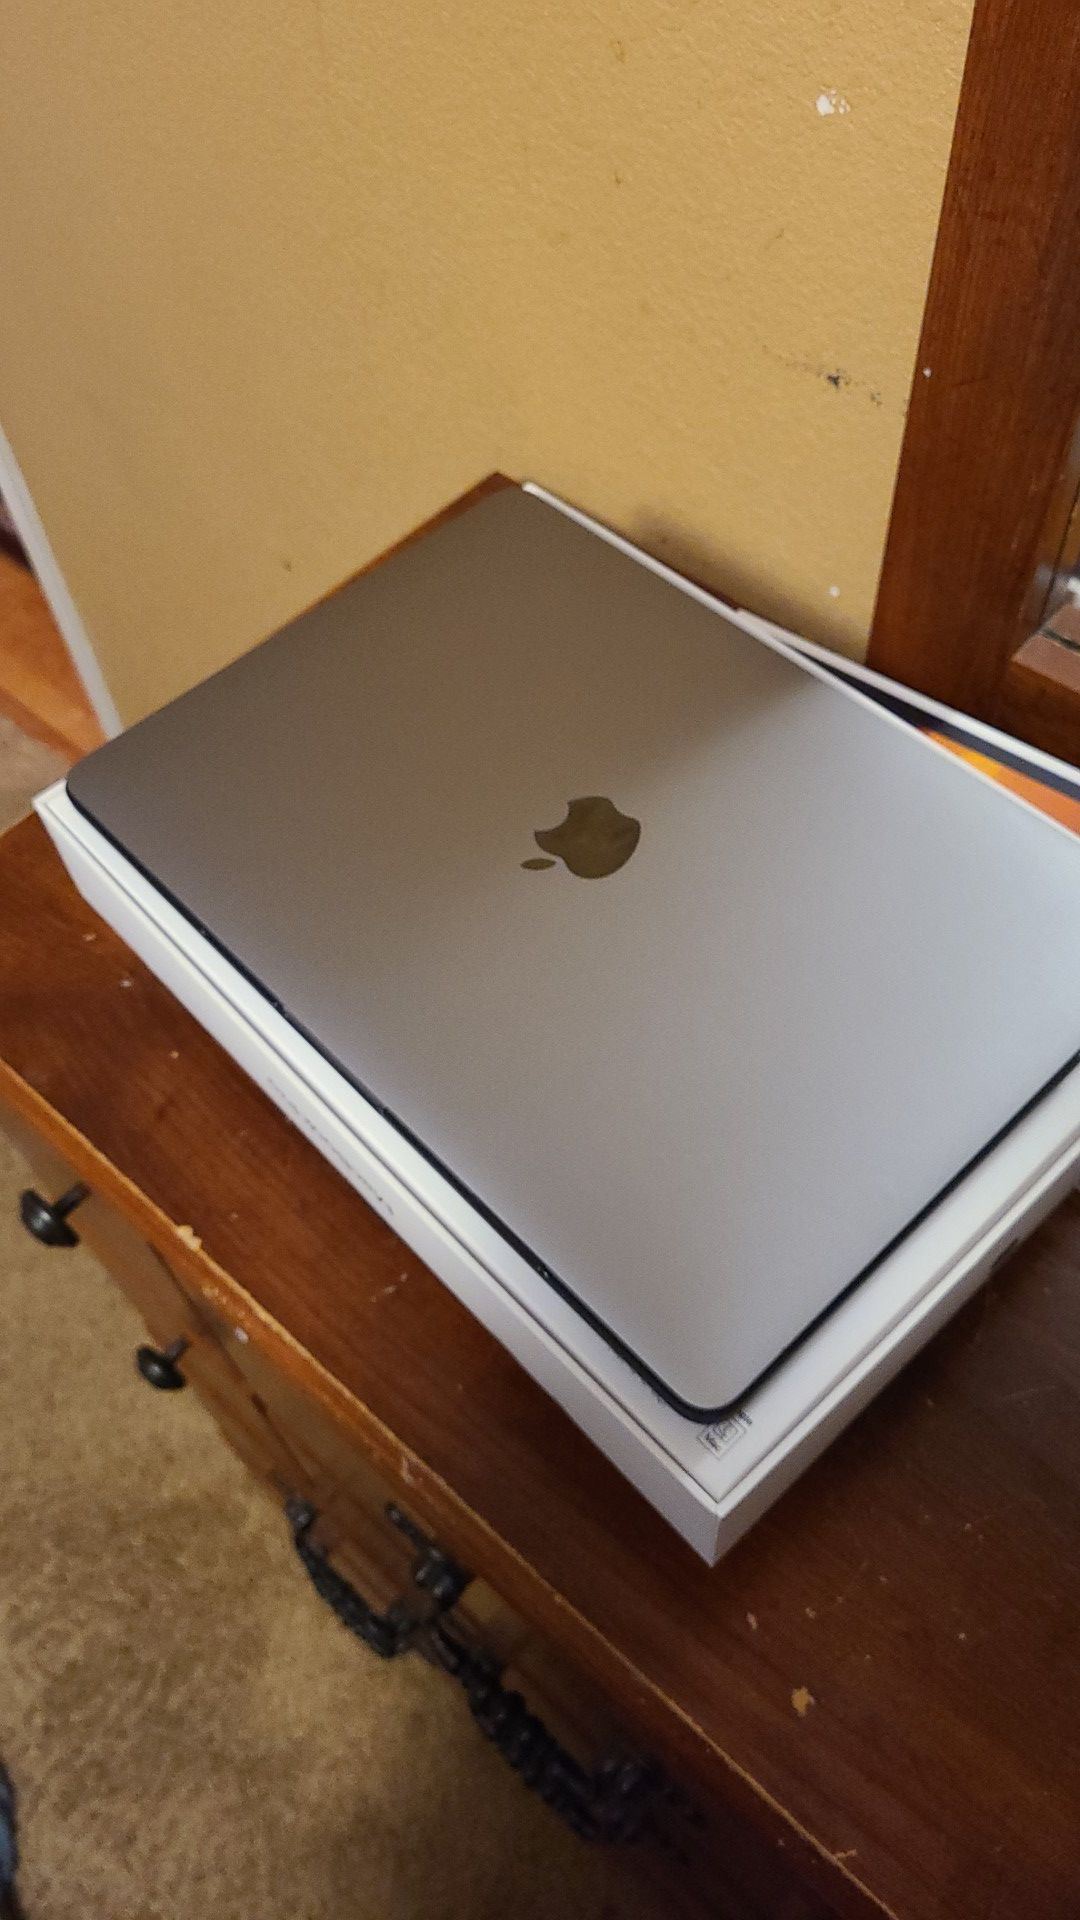 13-Inch MacBook Pro With Touchbar